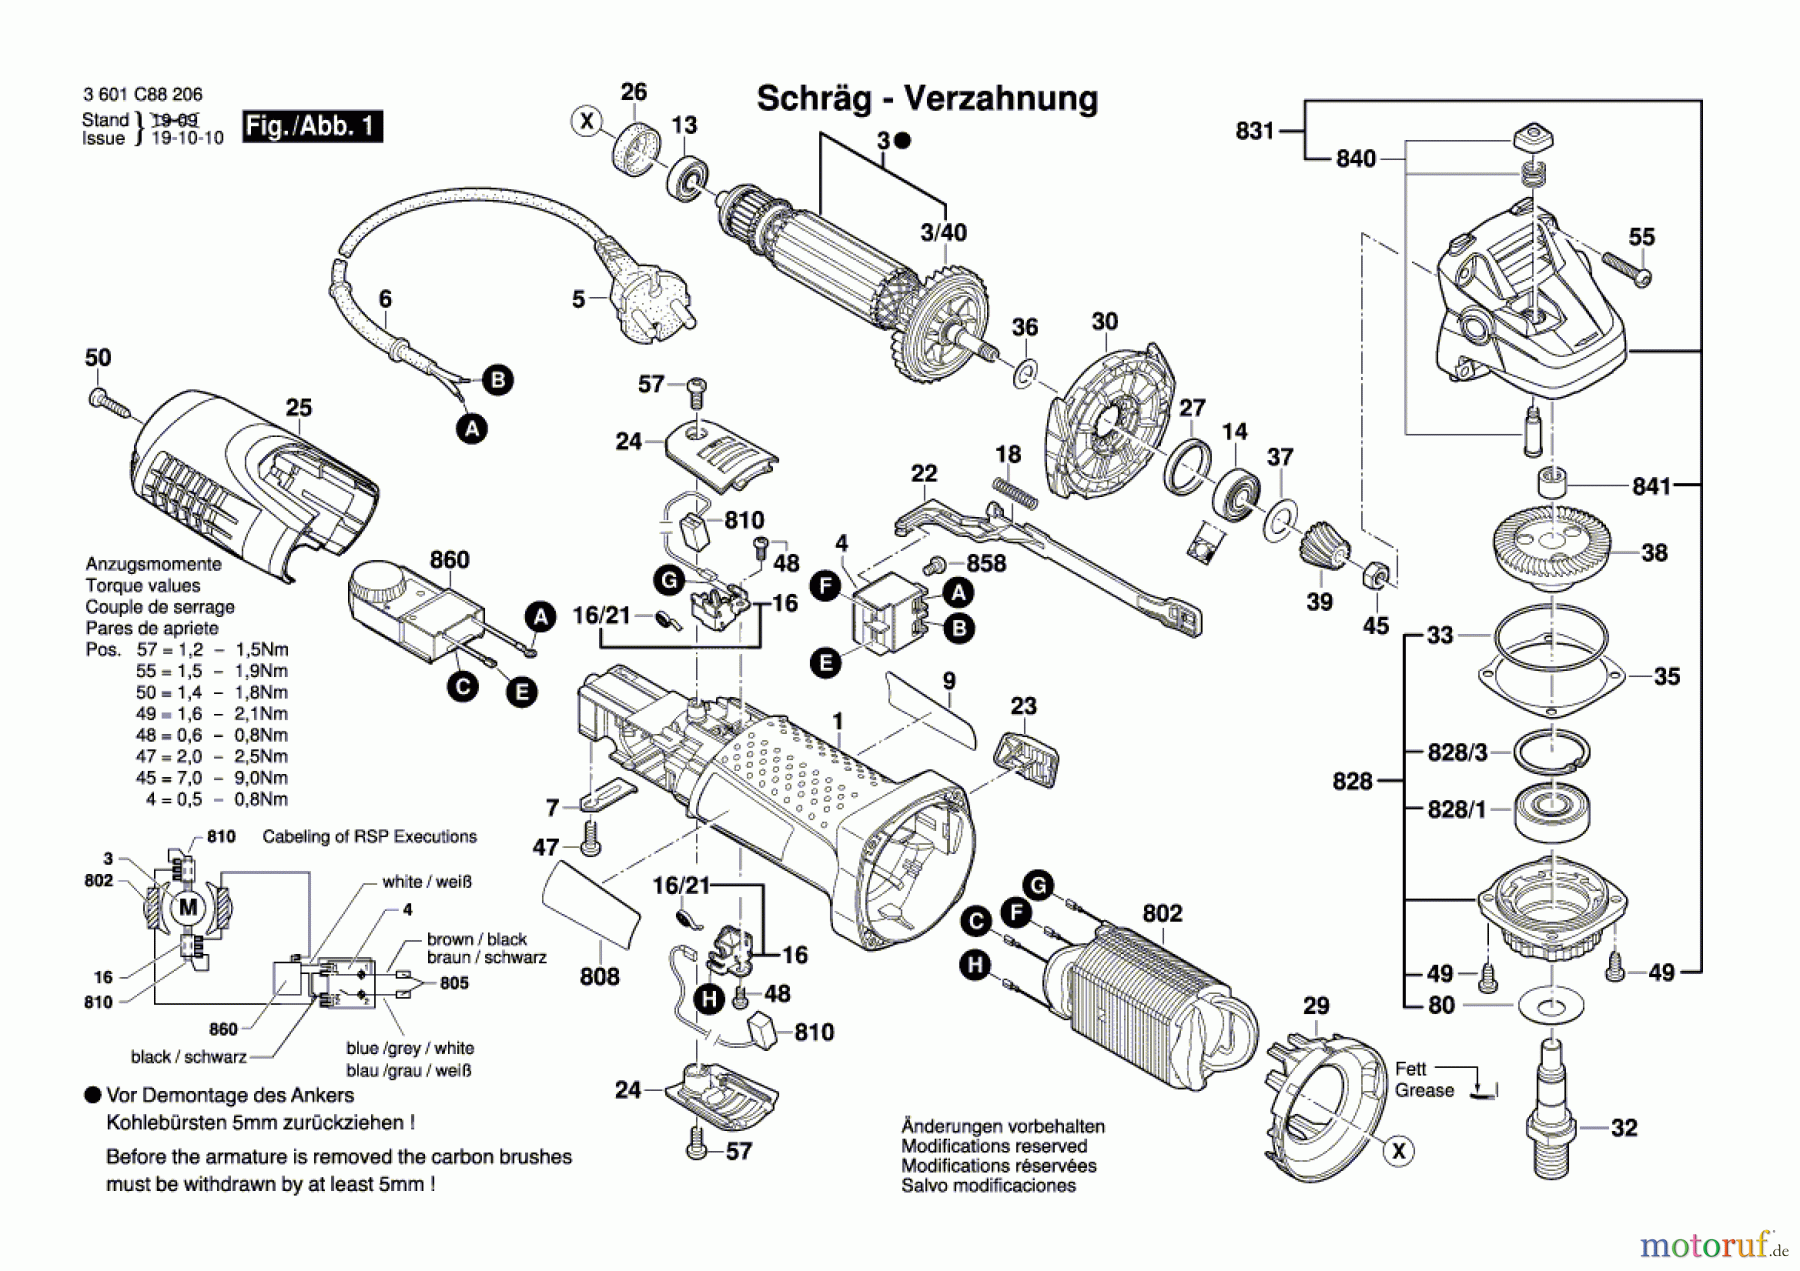  Bosch Werkzeug Winkelschleifer GWS 7-125 S Seite 1